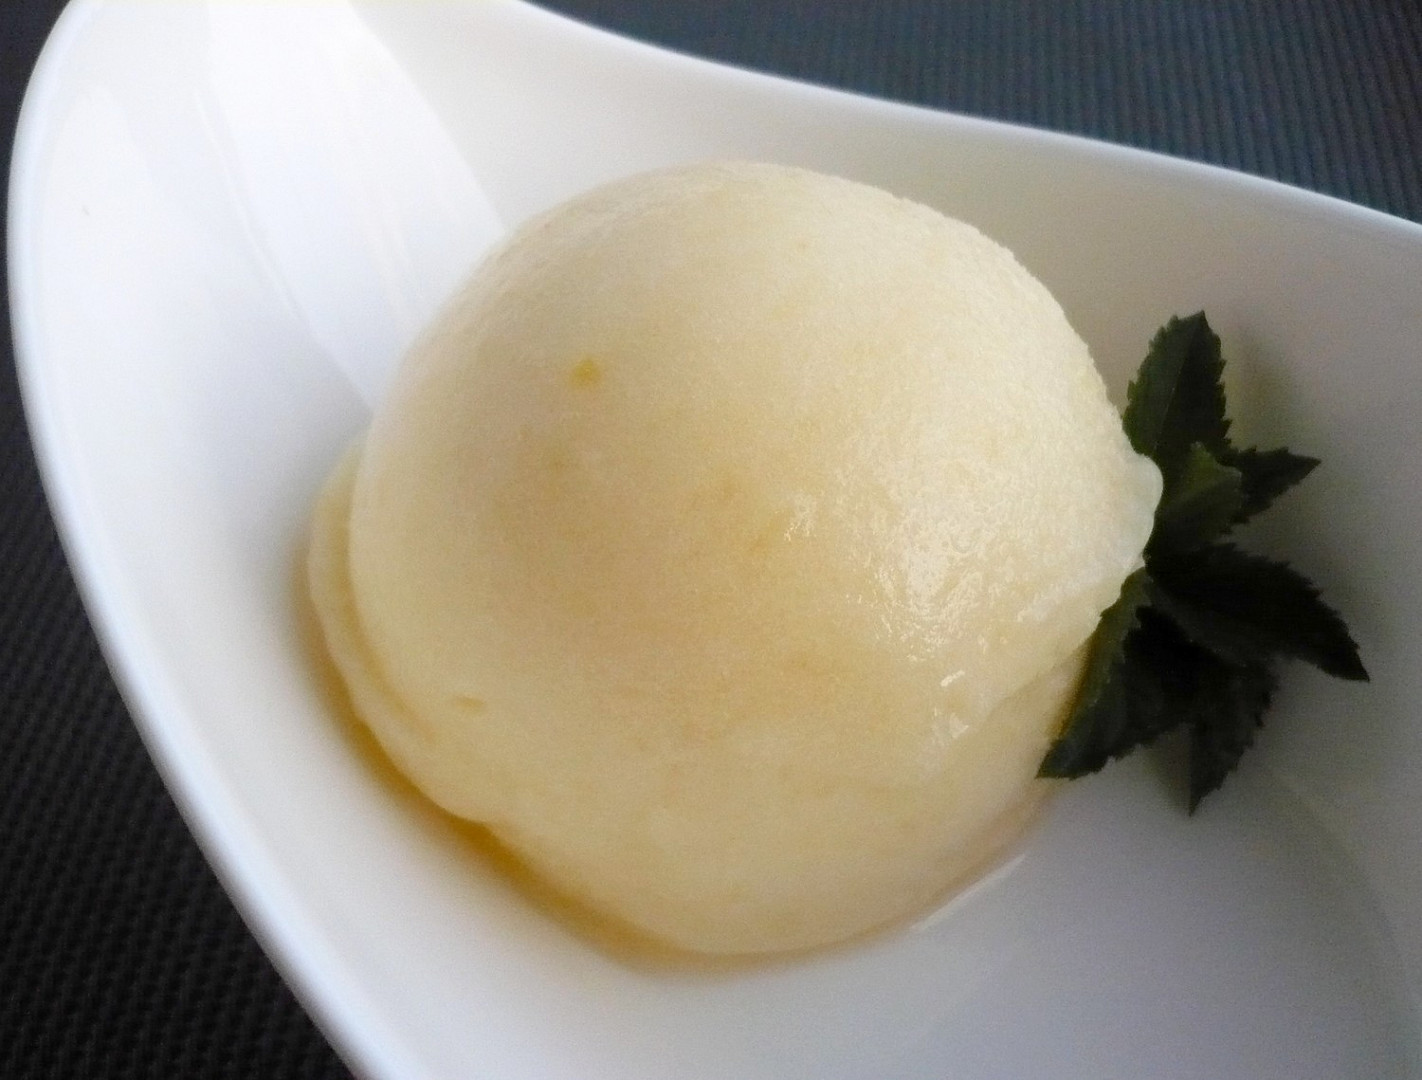 Jablečná zmrzlina s pudinkem - jablečné nanuky